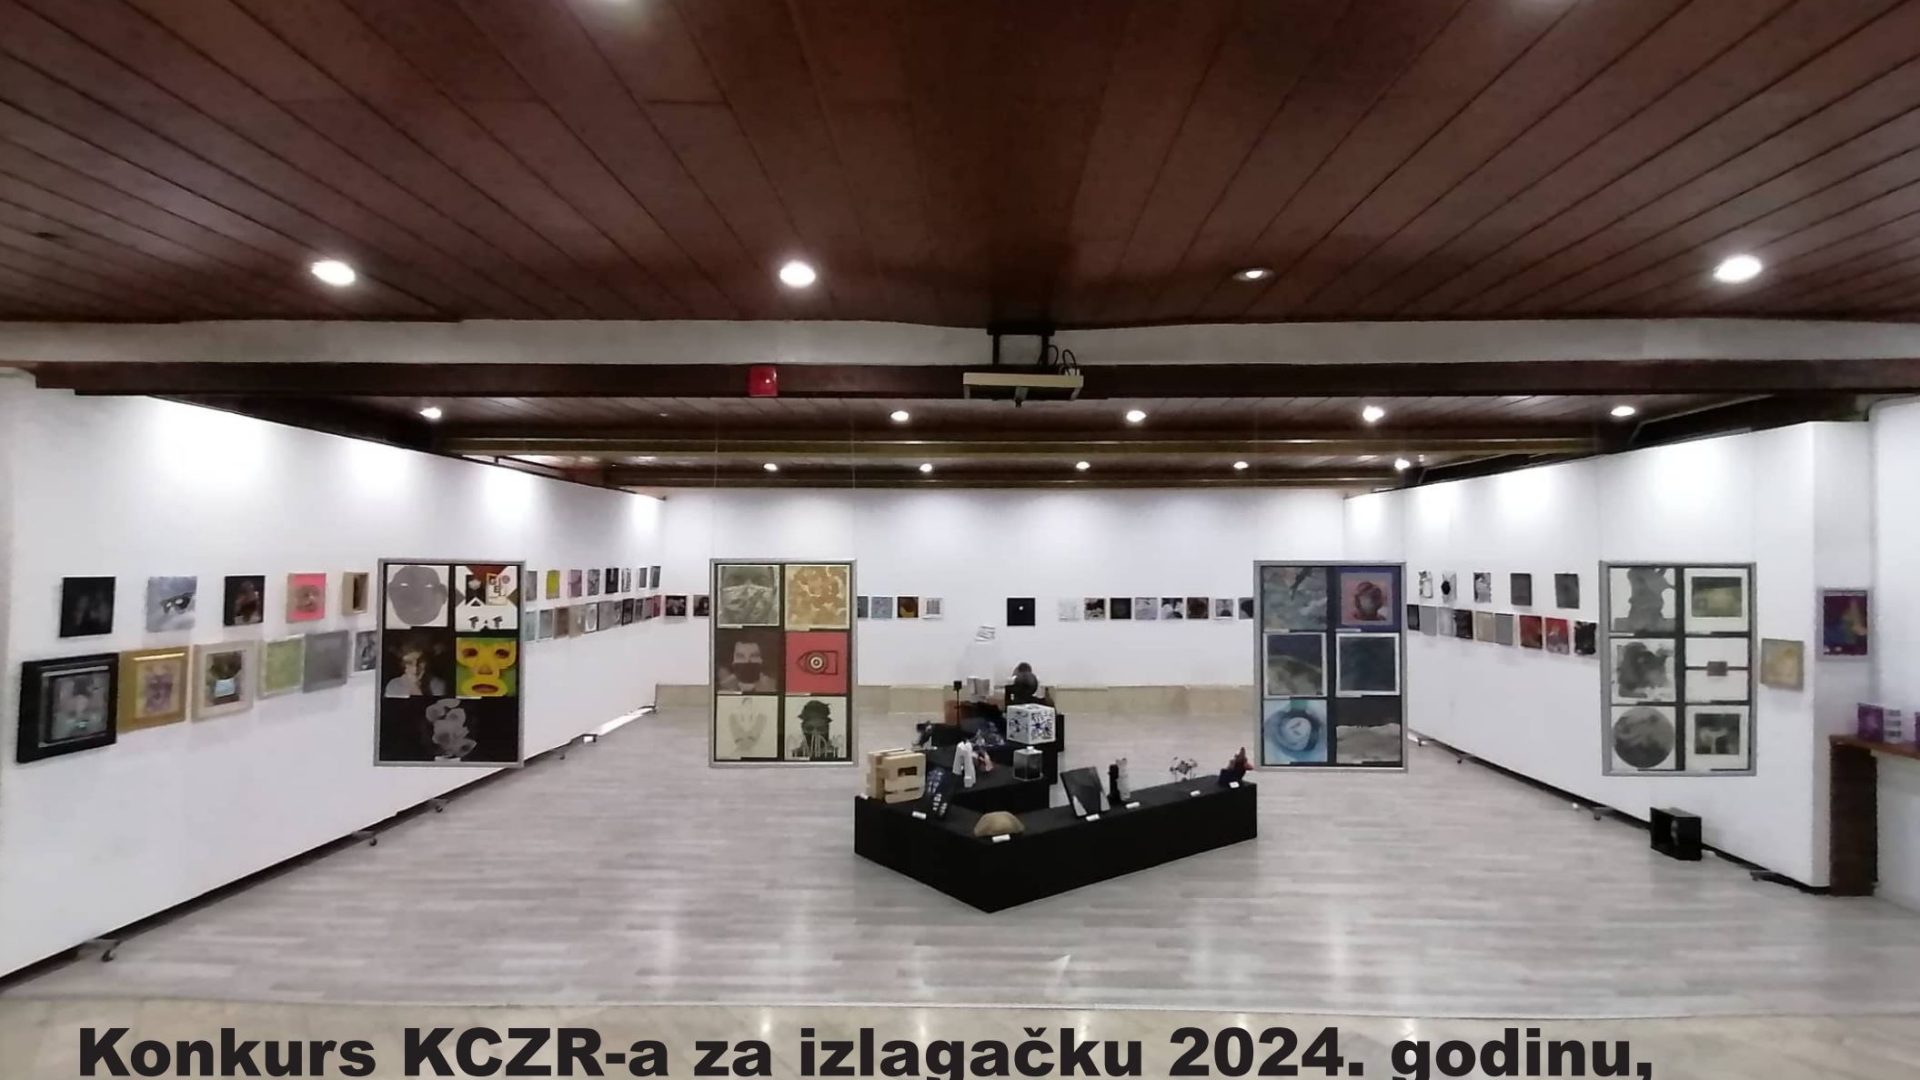 Konkurs za izlaganje u izložbenom salonu KCZR-a za 2024. godinu